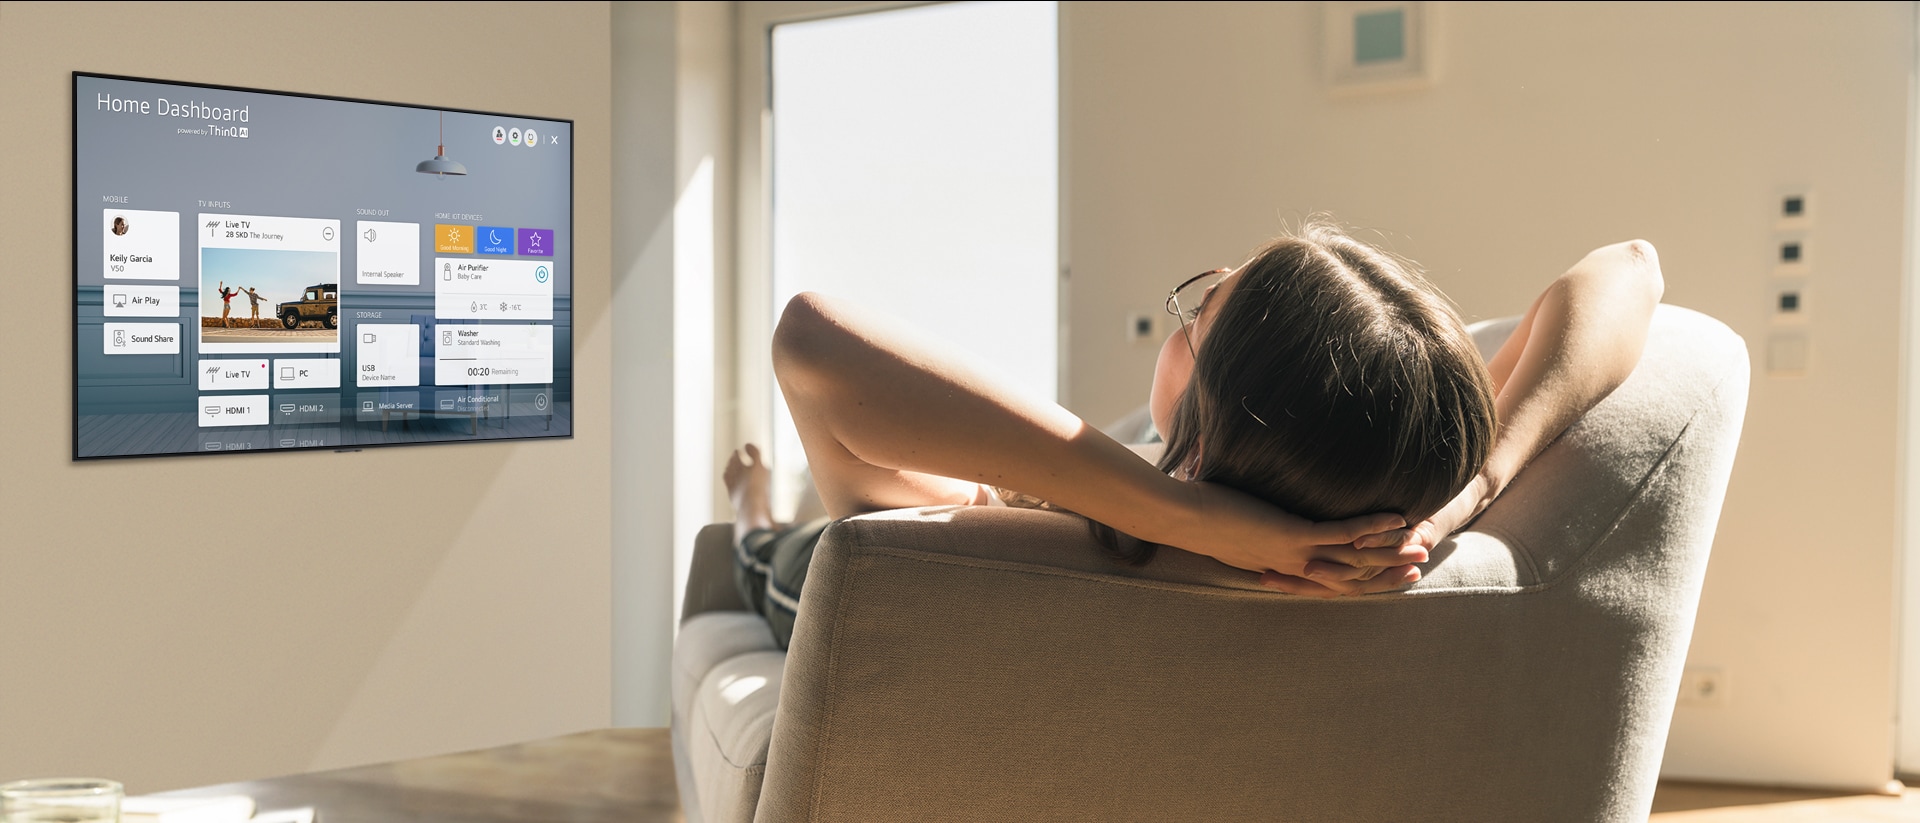 Žena leži na kauču i govori televizoru da spusti temperaturu putem Kućne nadzorne ploče (Home Dashboard) na zaslonu televizora